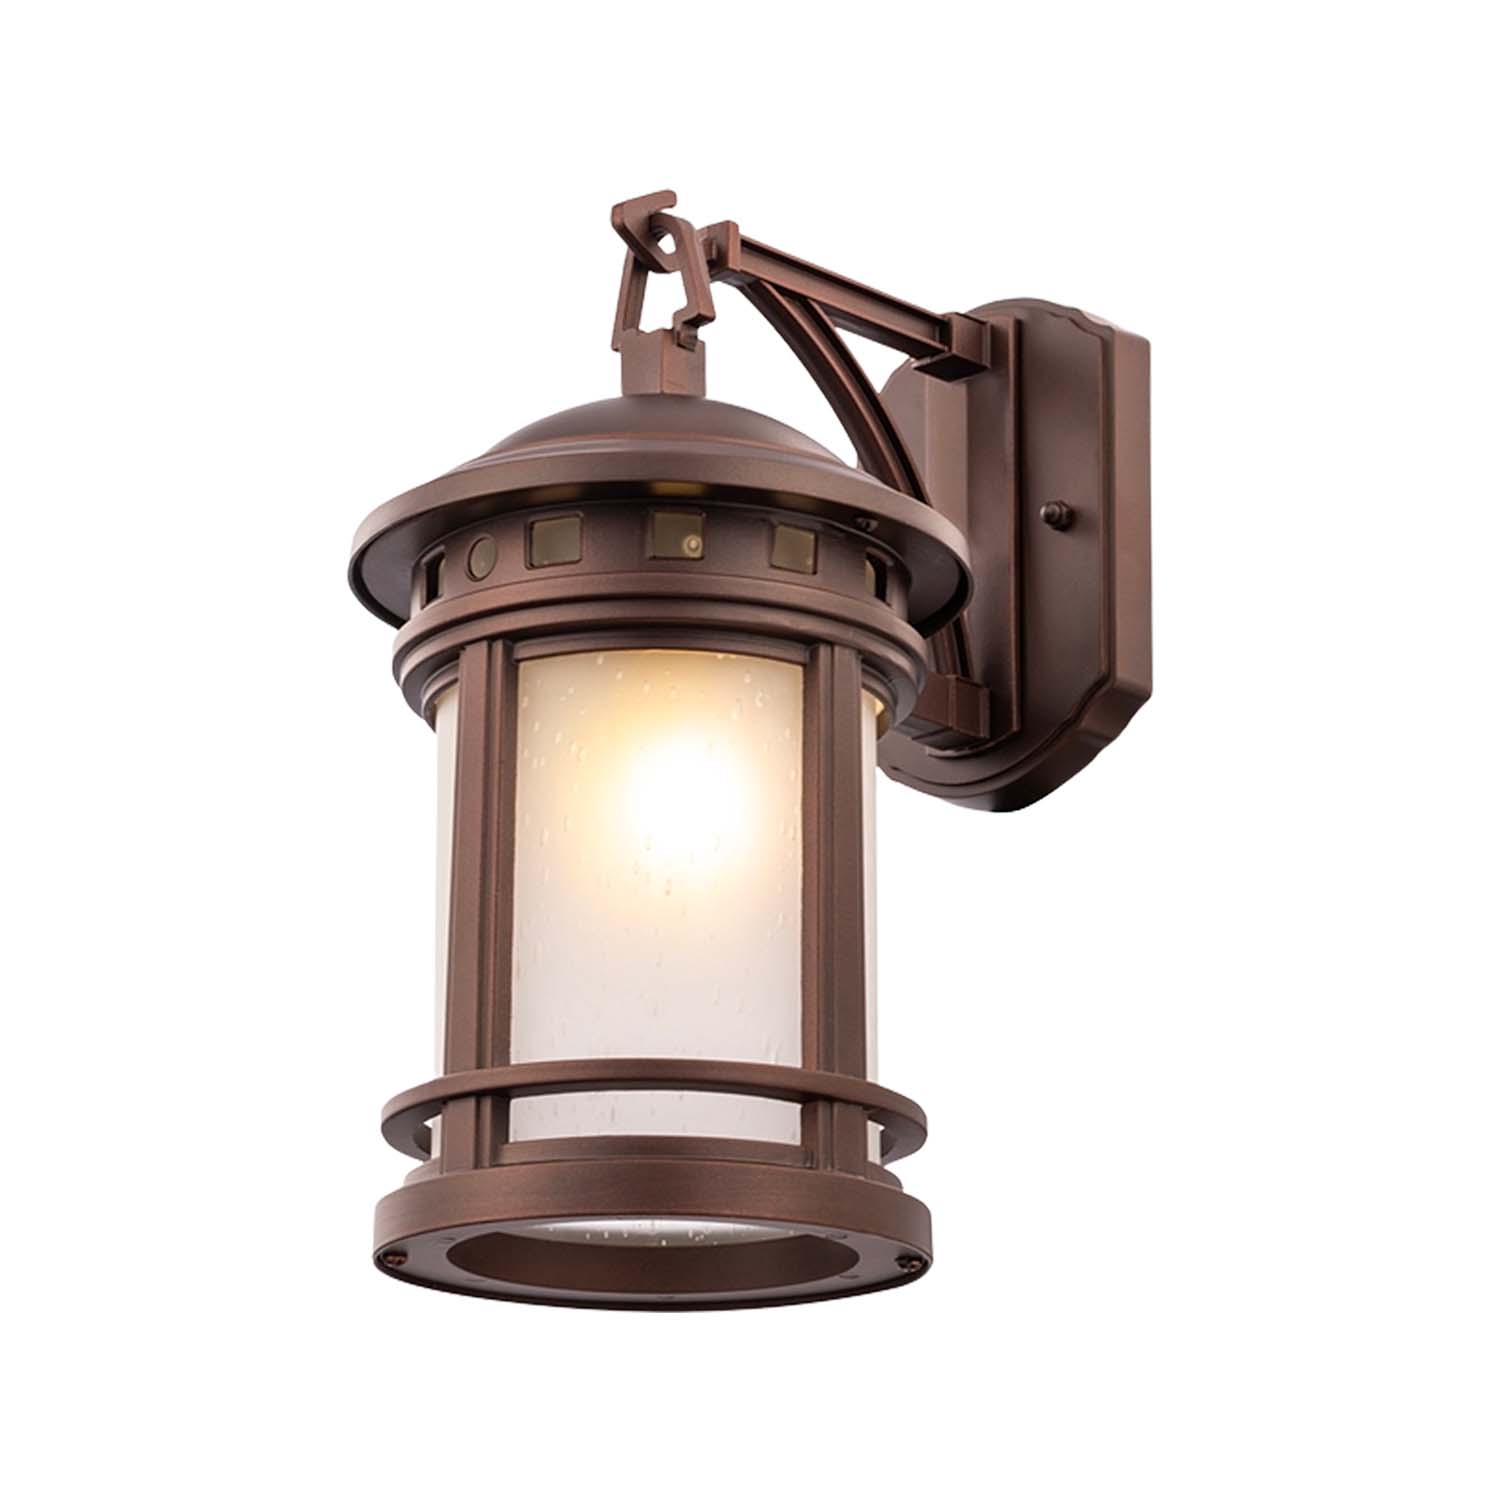 SALAMANCA - Vintage Waterproof Bronze Outdoor Wall Lamp